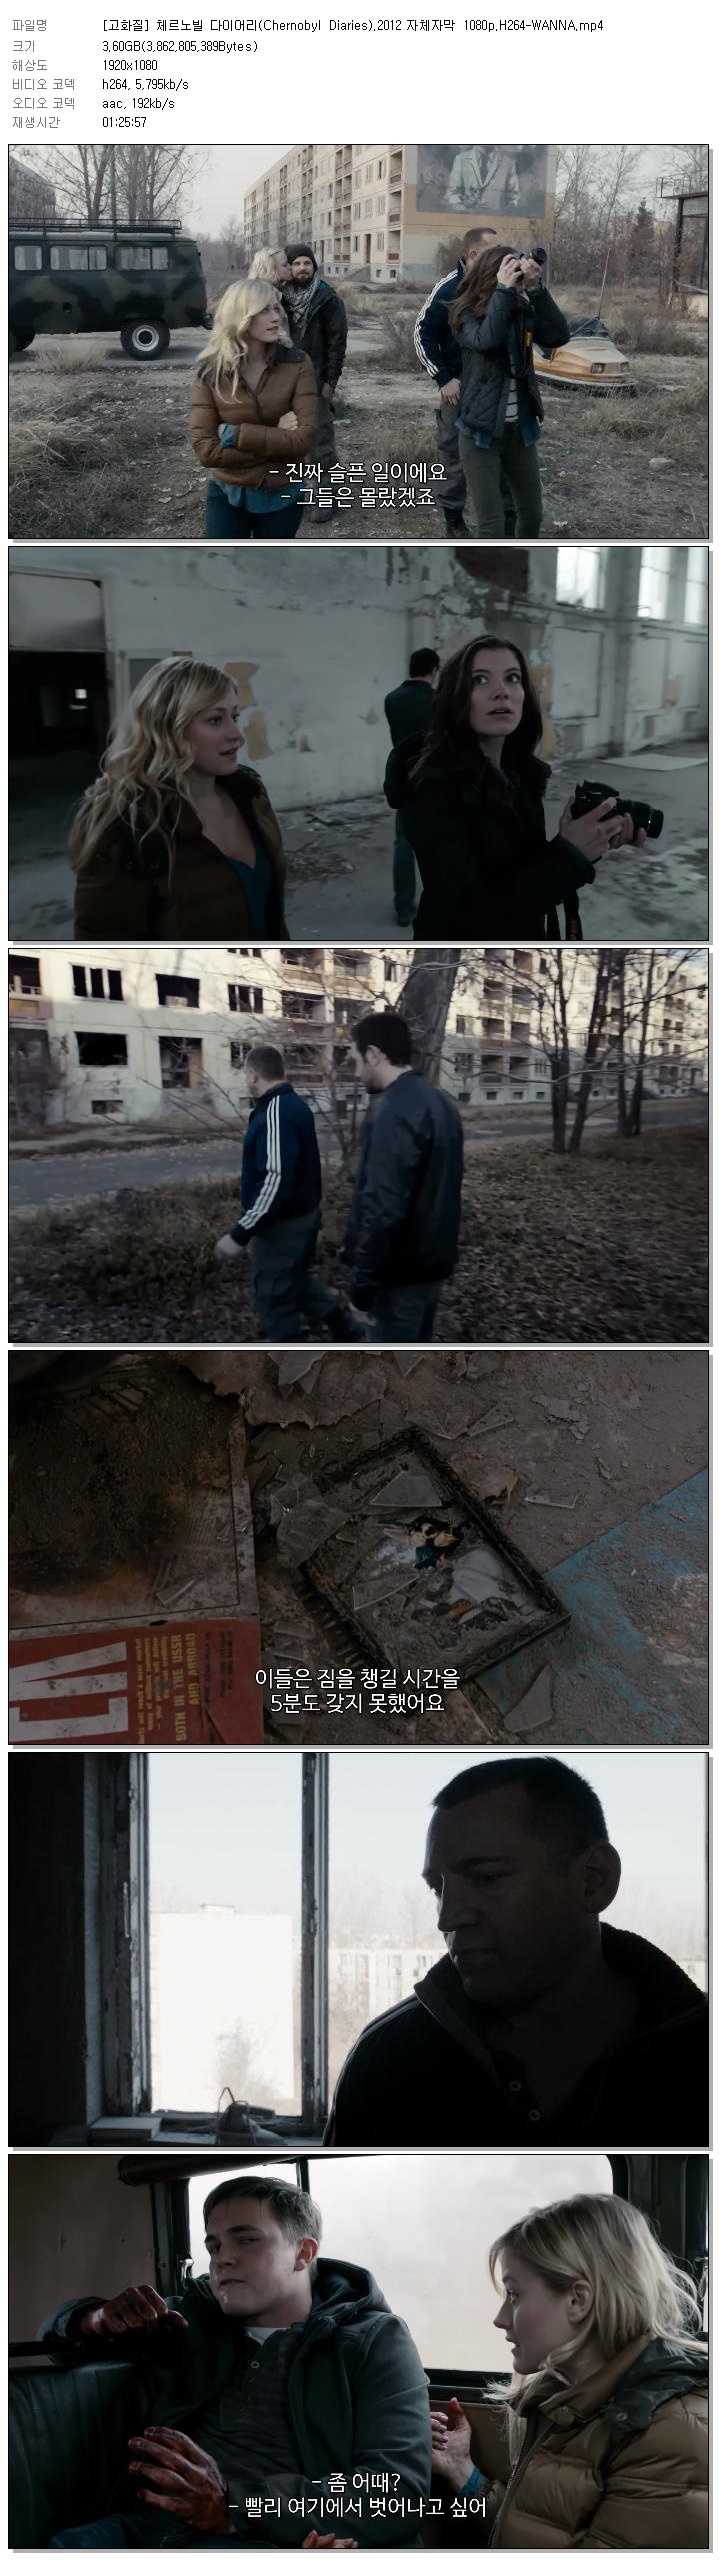 [고화질] 체르노빌 다이어리(Chernobyl Diaries).2012 자체자막 1080p.H264-WANNA